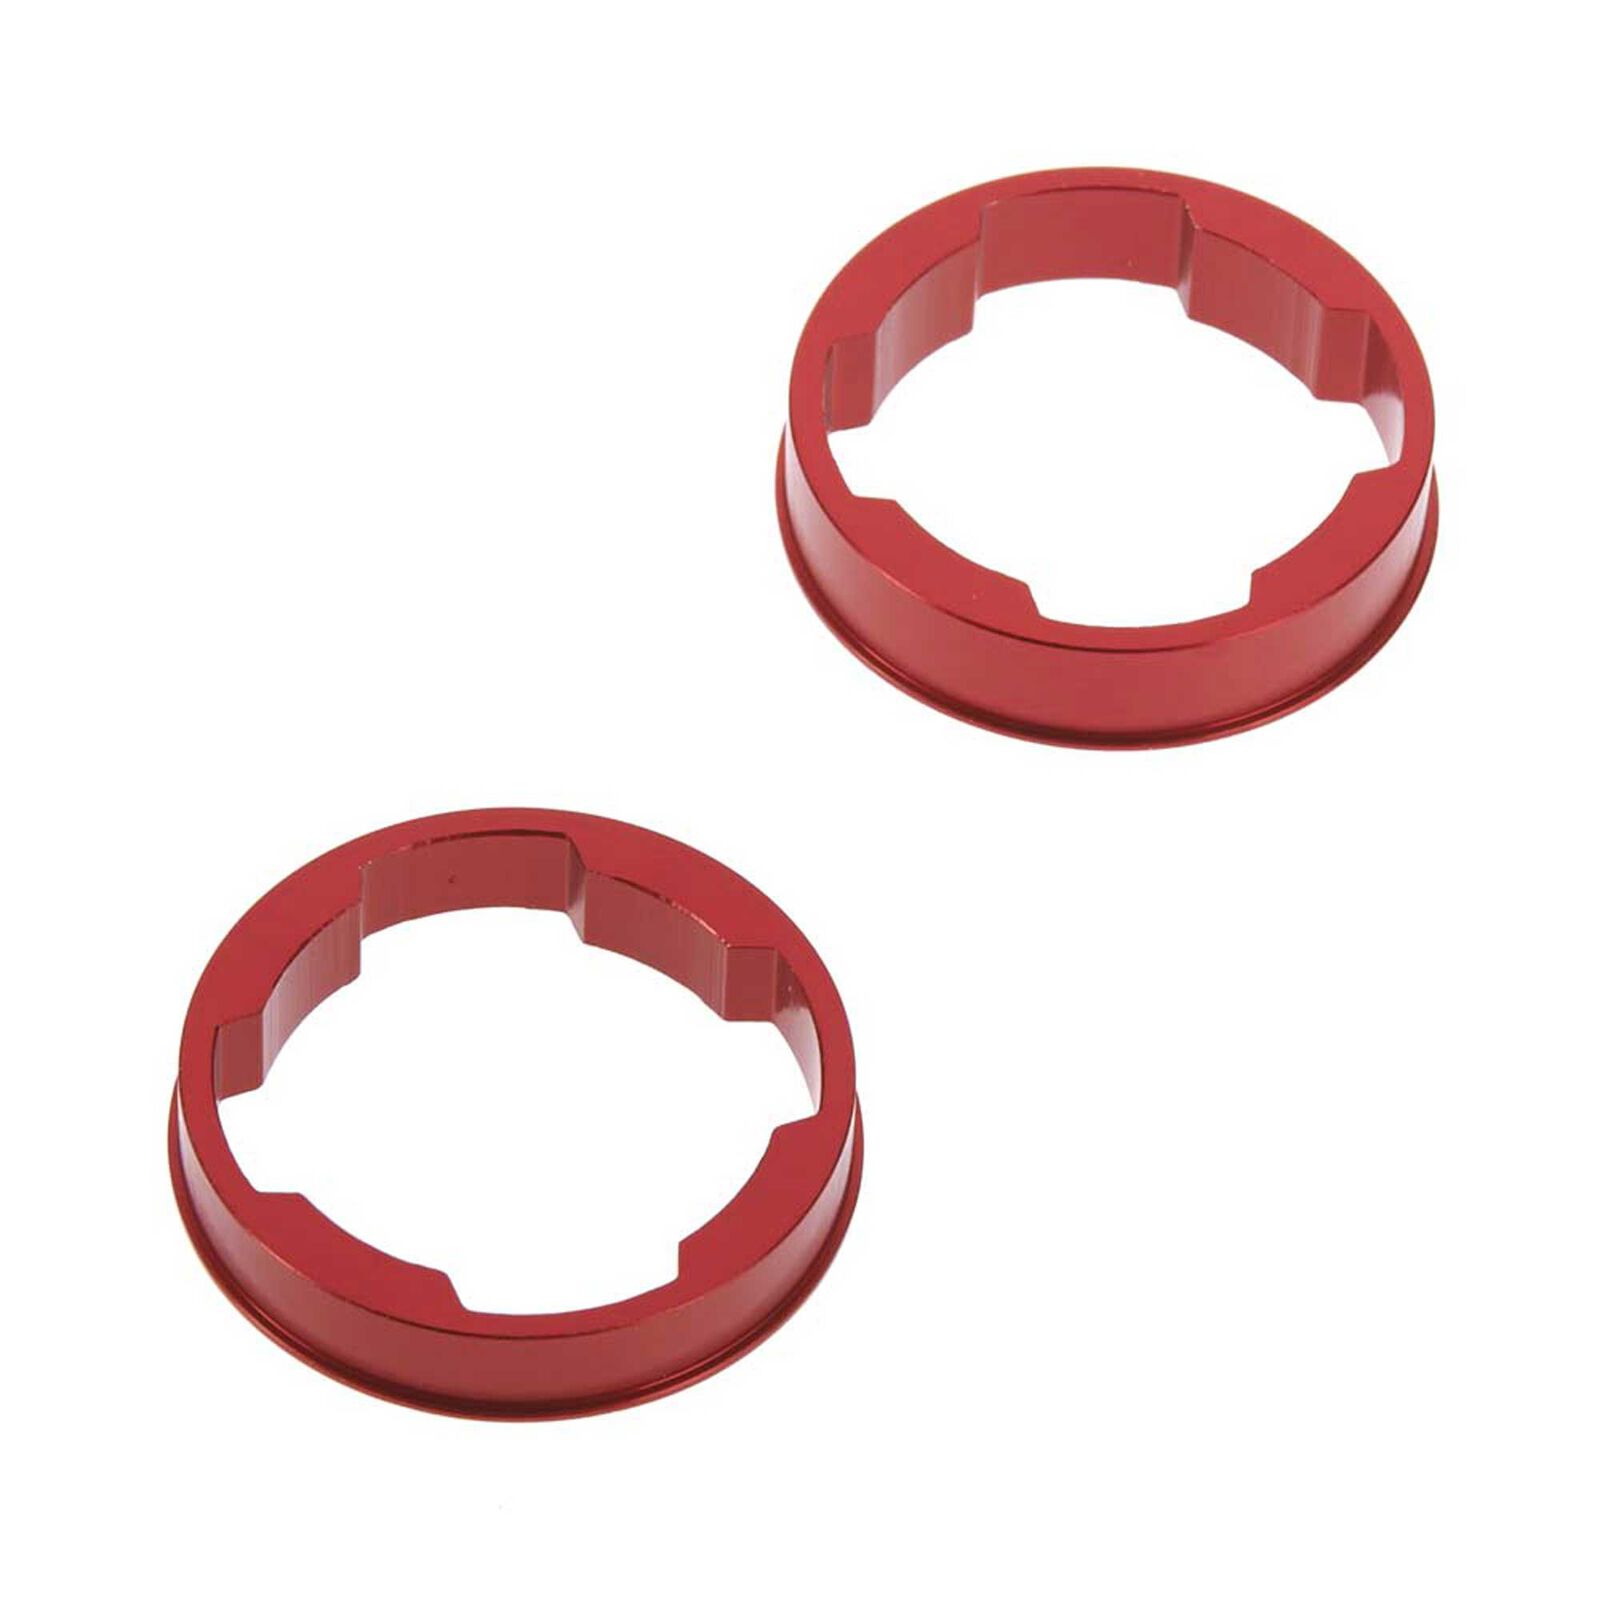 Center Differential Aluminum Cams, Red (2): Nero